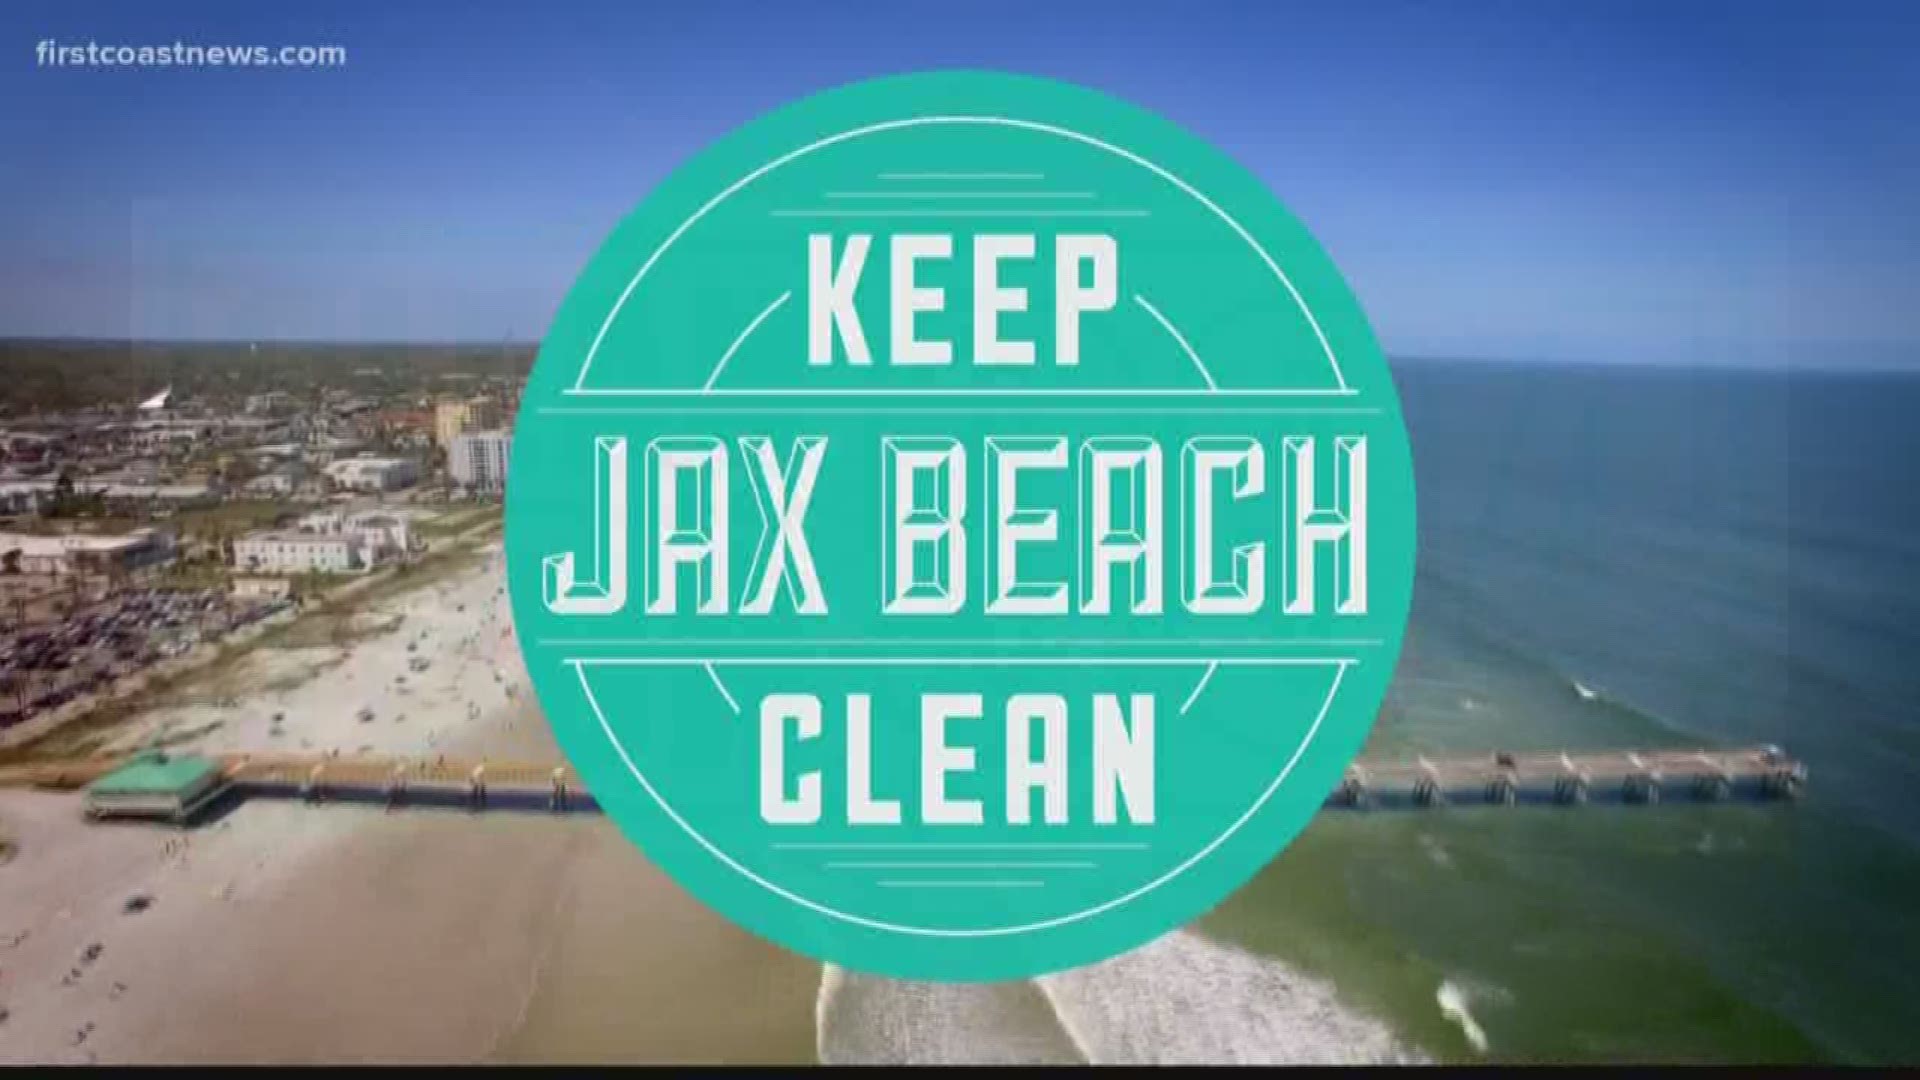 Keep Jax Beach Clean.